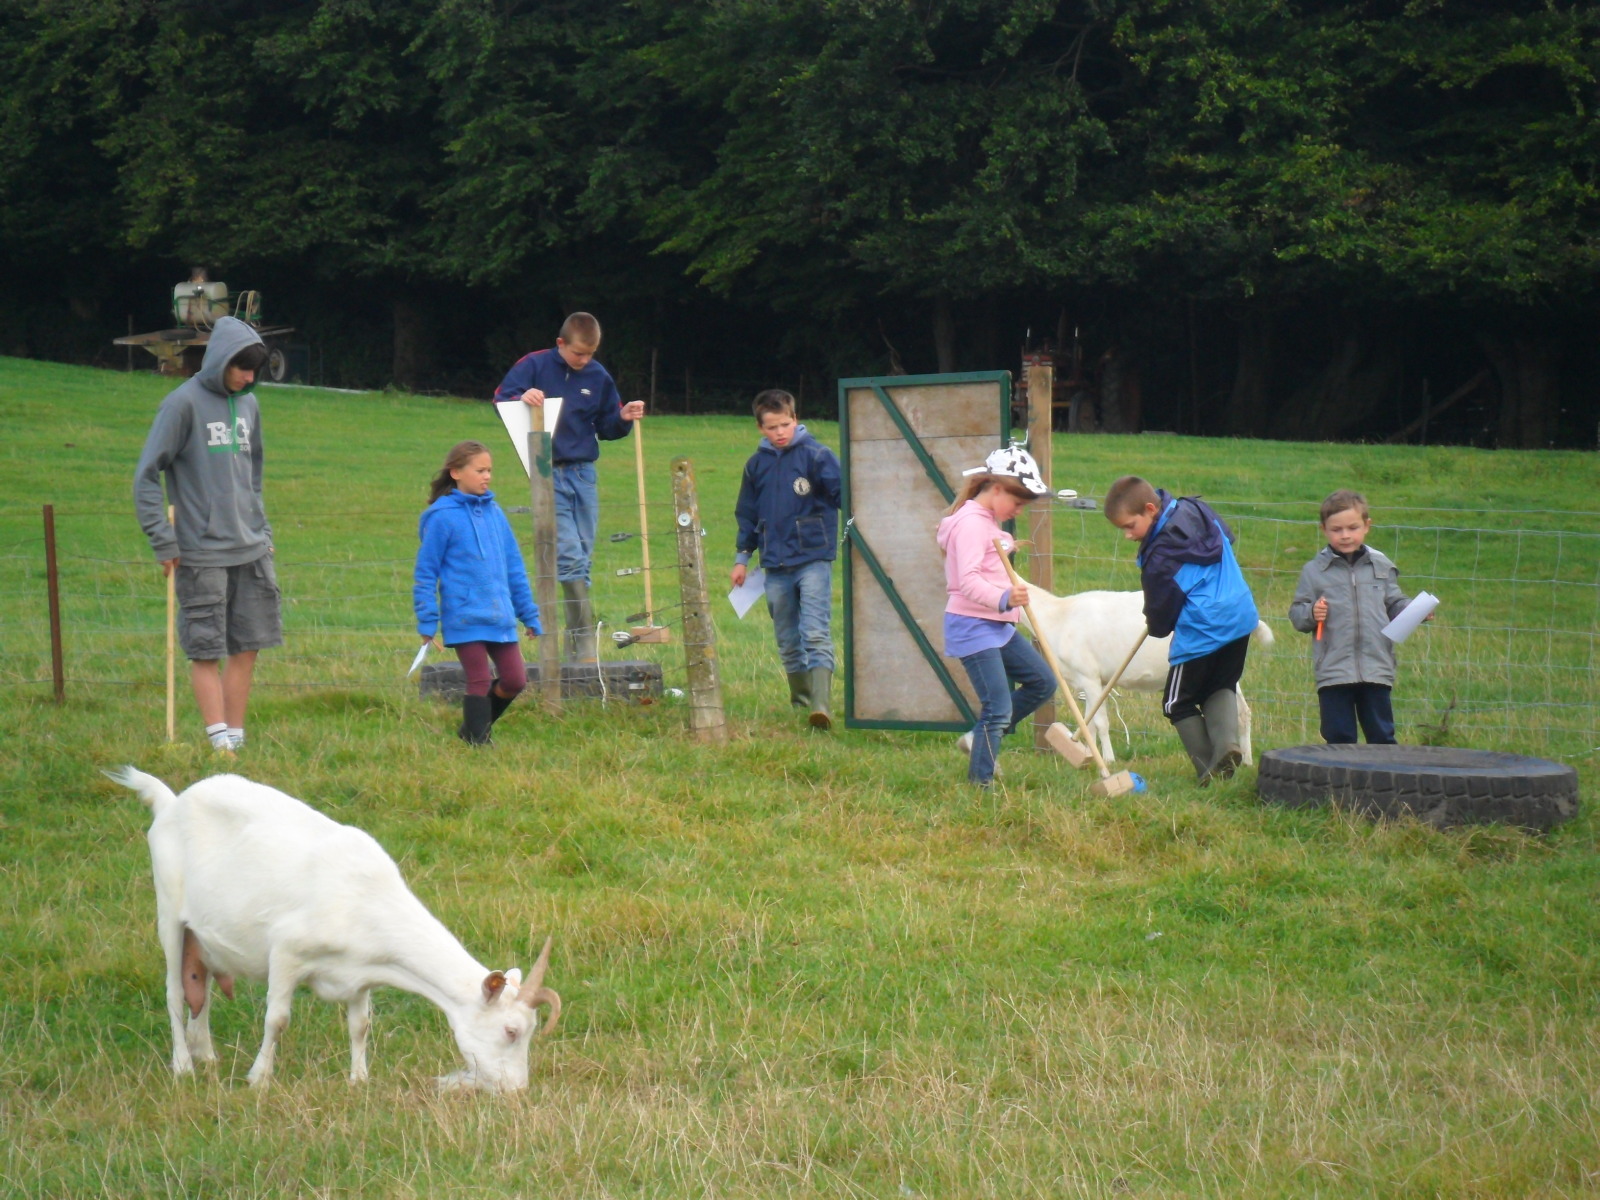 Enfants jouant au golf dans un champ, entourés de chèvres